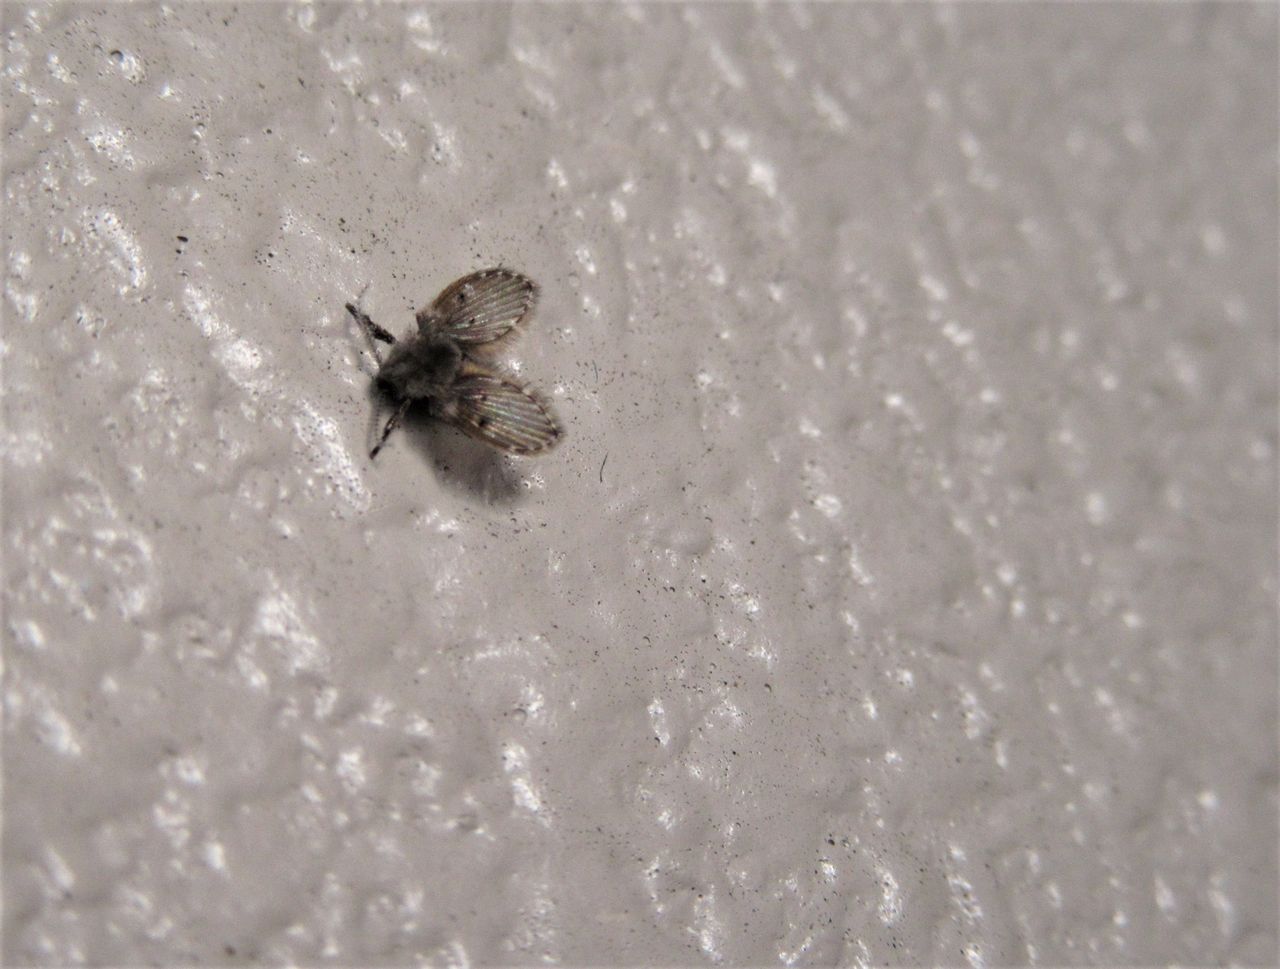 夏 小さい 虫 部屋に小さな虫が大量発生していて困っています コバエよりも小さく 1